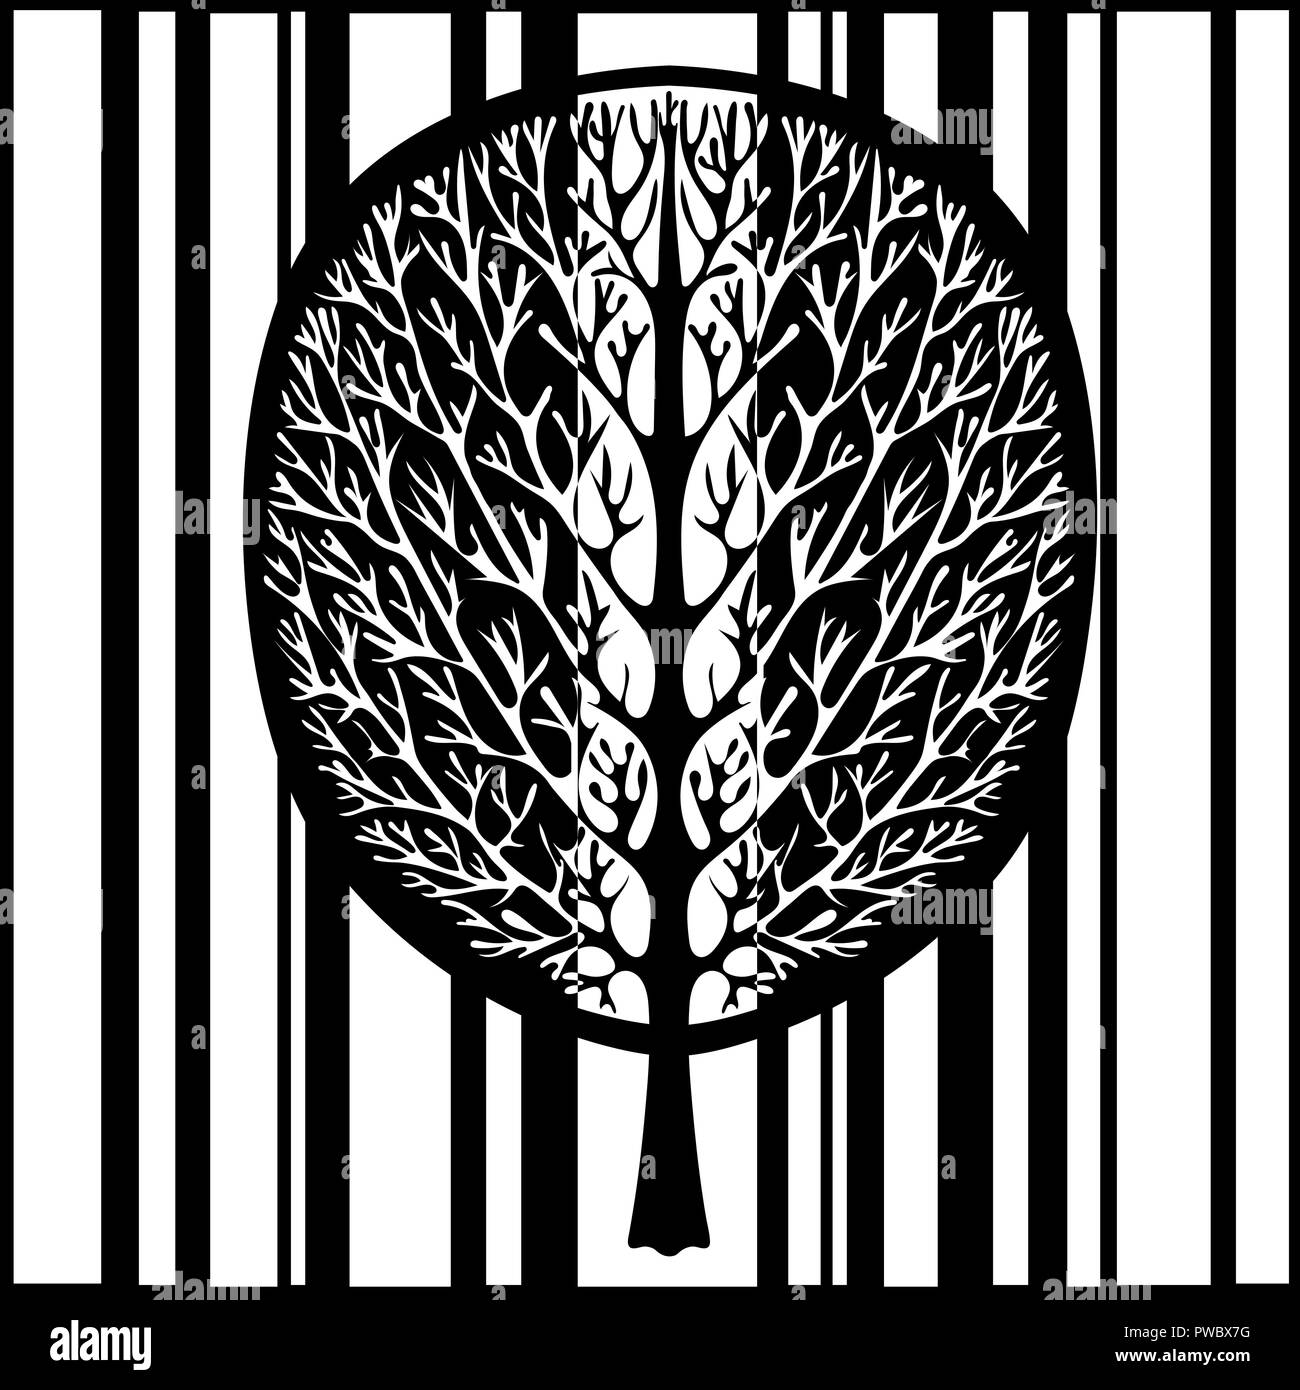 Abstract tree, vector illustration, dessin monochrome stylisée vintage. Arbre décoré avec des branches et le feuillage de la couronne dans le contexte d'un noir Illustration de Vecteur